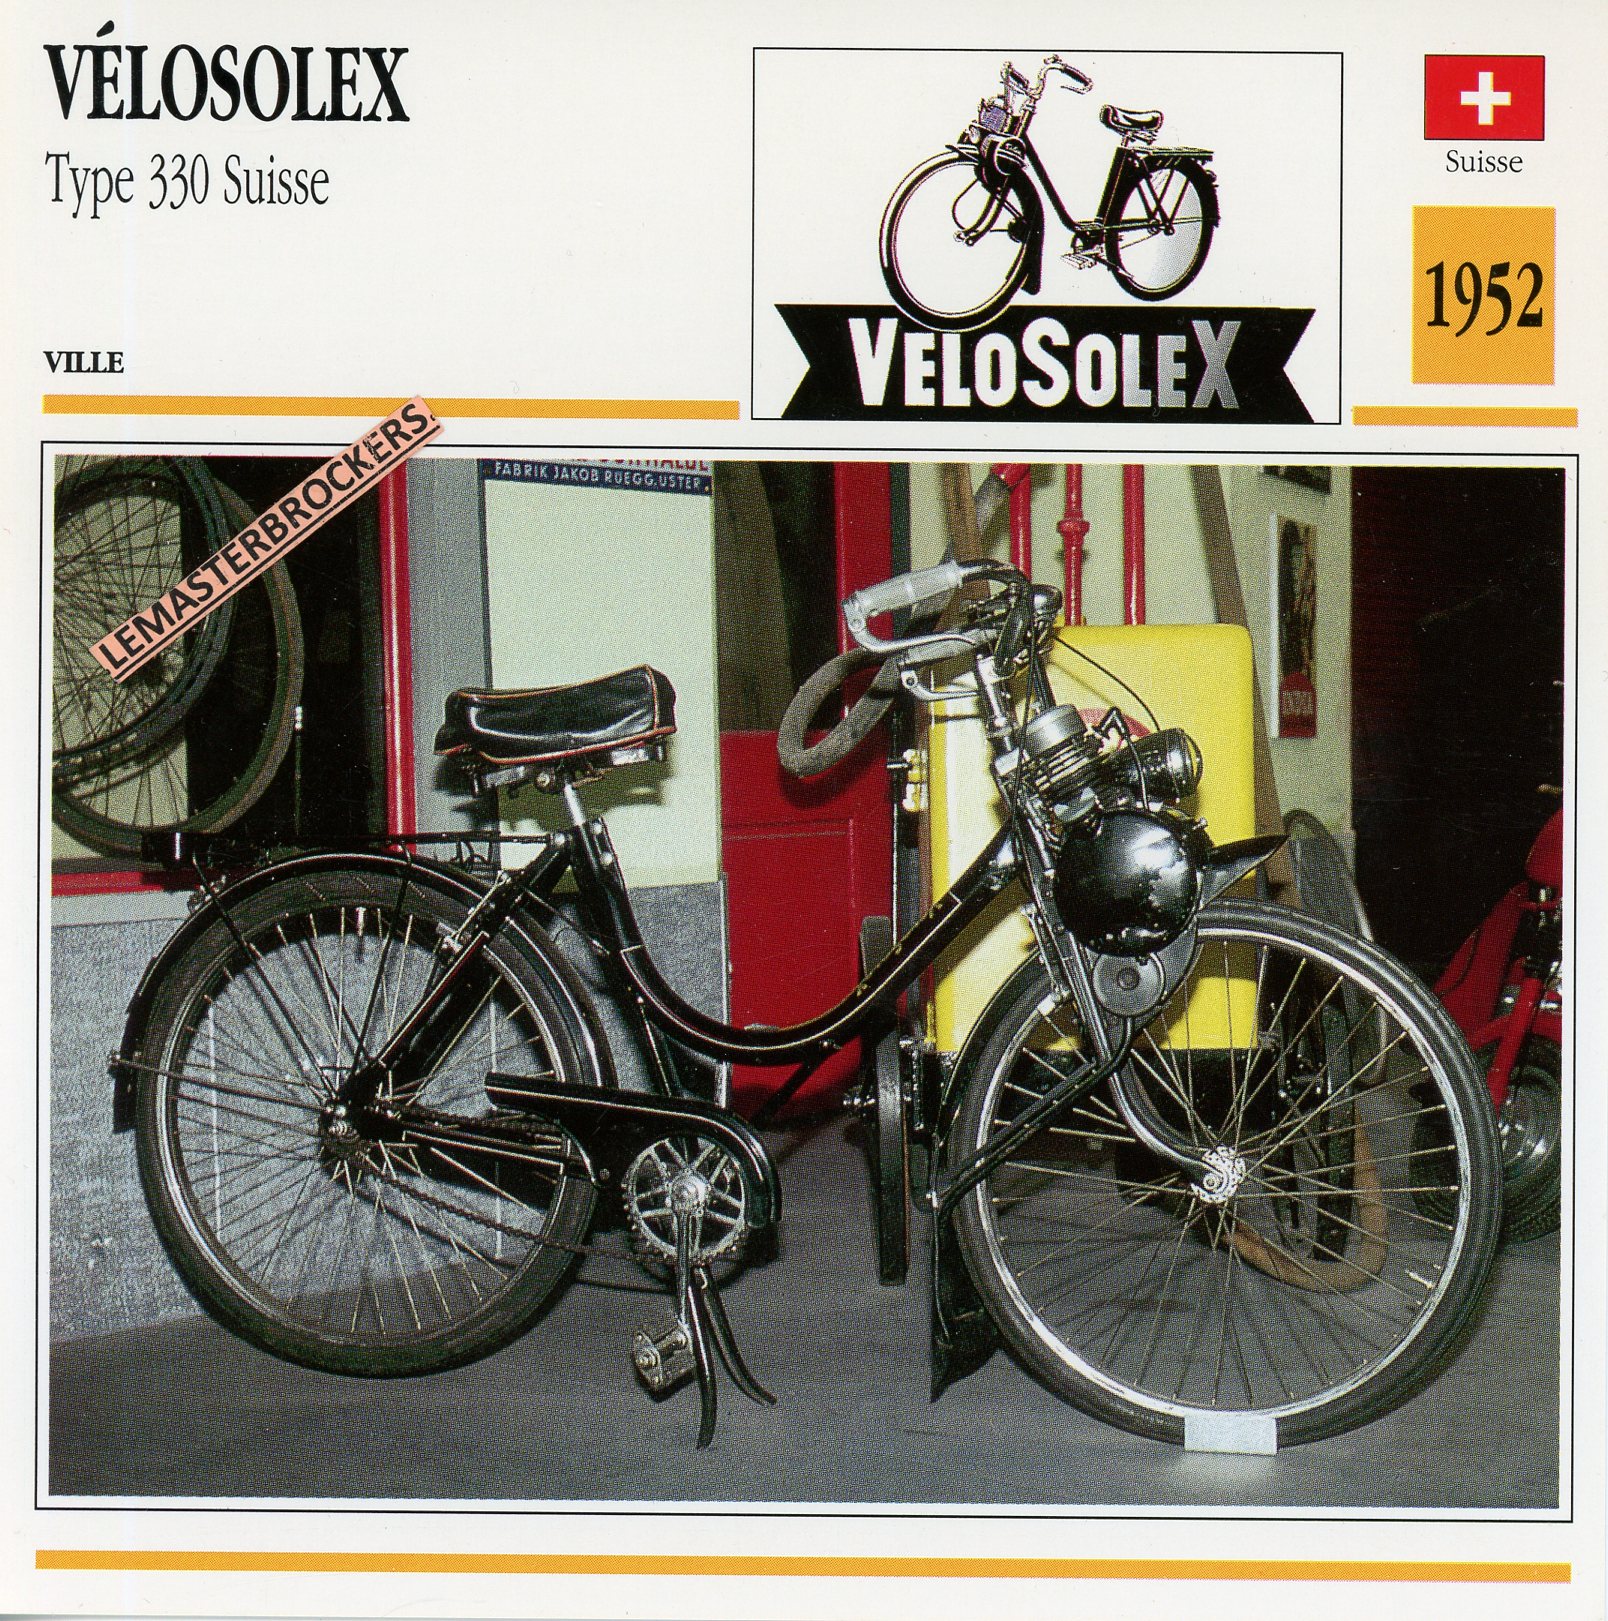 VÉLOSOLEX 330 SUISSE 1952 - CARTE CARD FICHE CYCLOMOTEUR 49CC SOLEX VÉLOMOTEUR